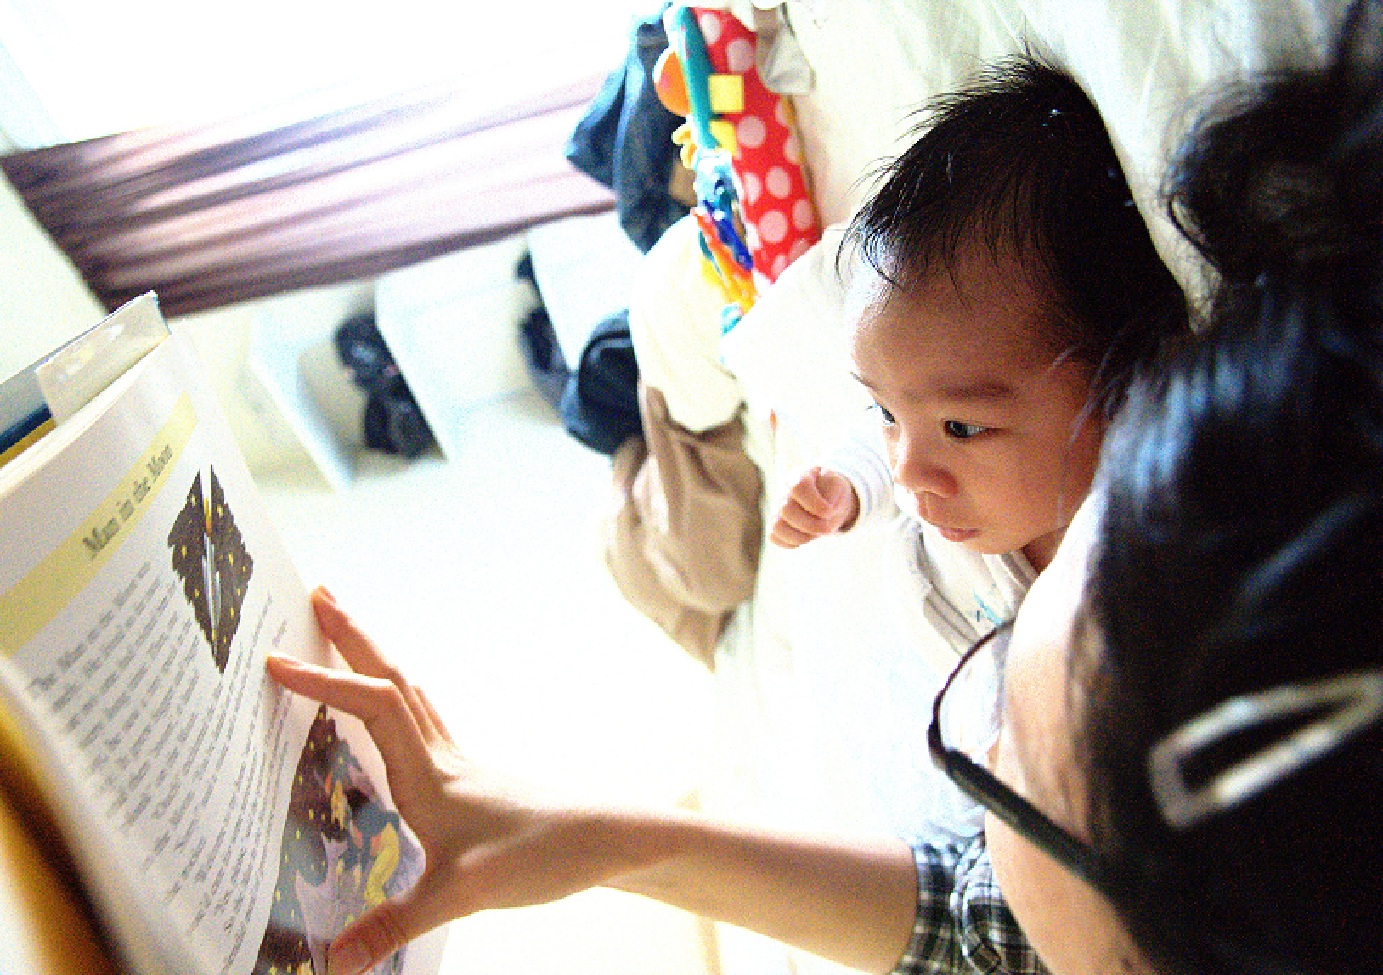 Reaccionar al balbuceo de los hijos mientras se les lee un libro produce beneficios en su desarrollo. Imagen: George Ruiz. Fuente: Flickr.